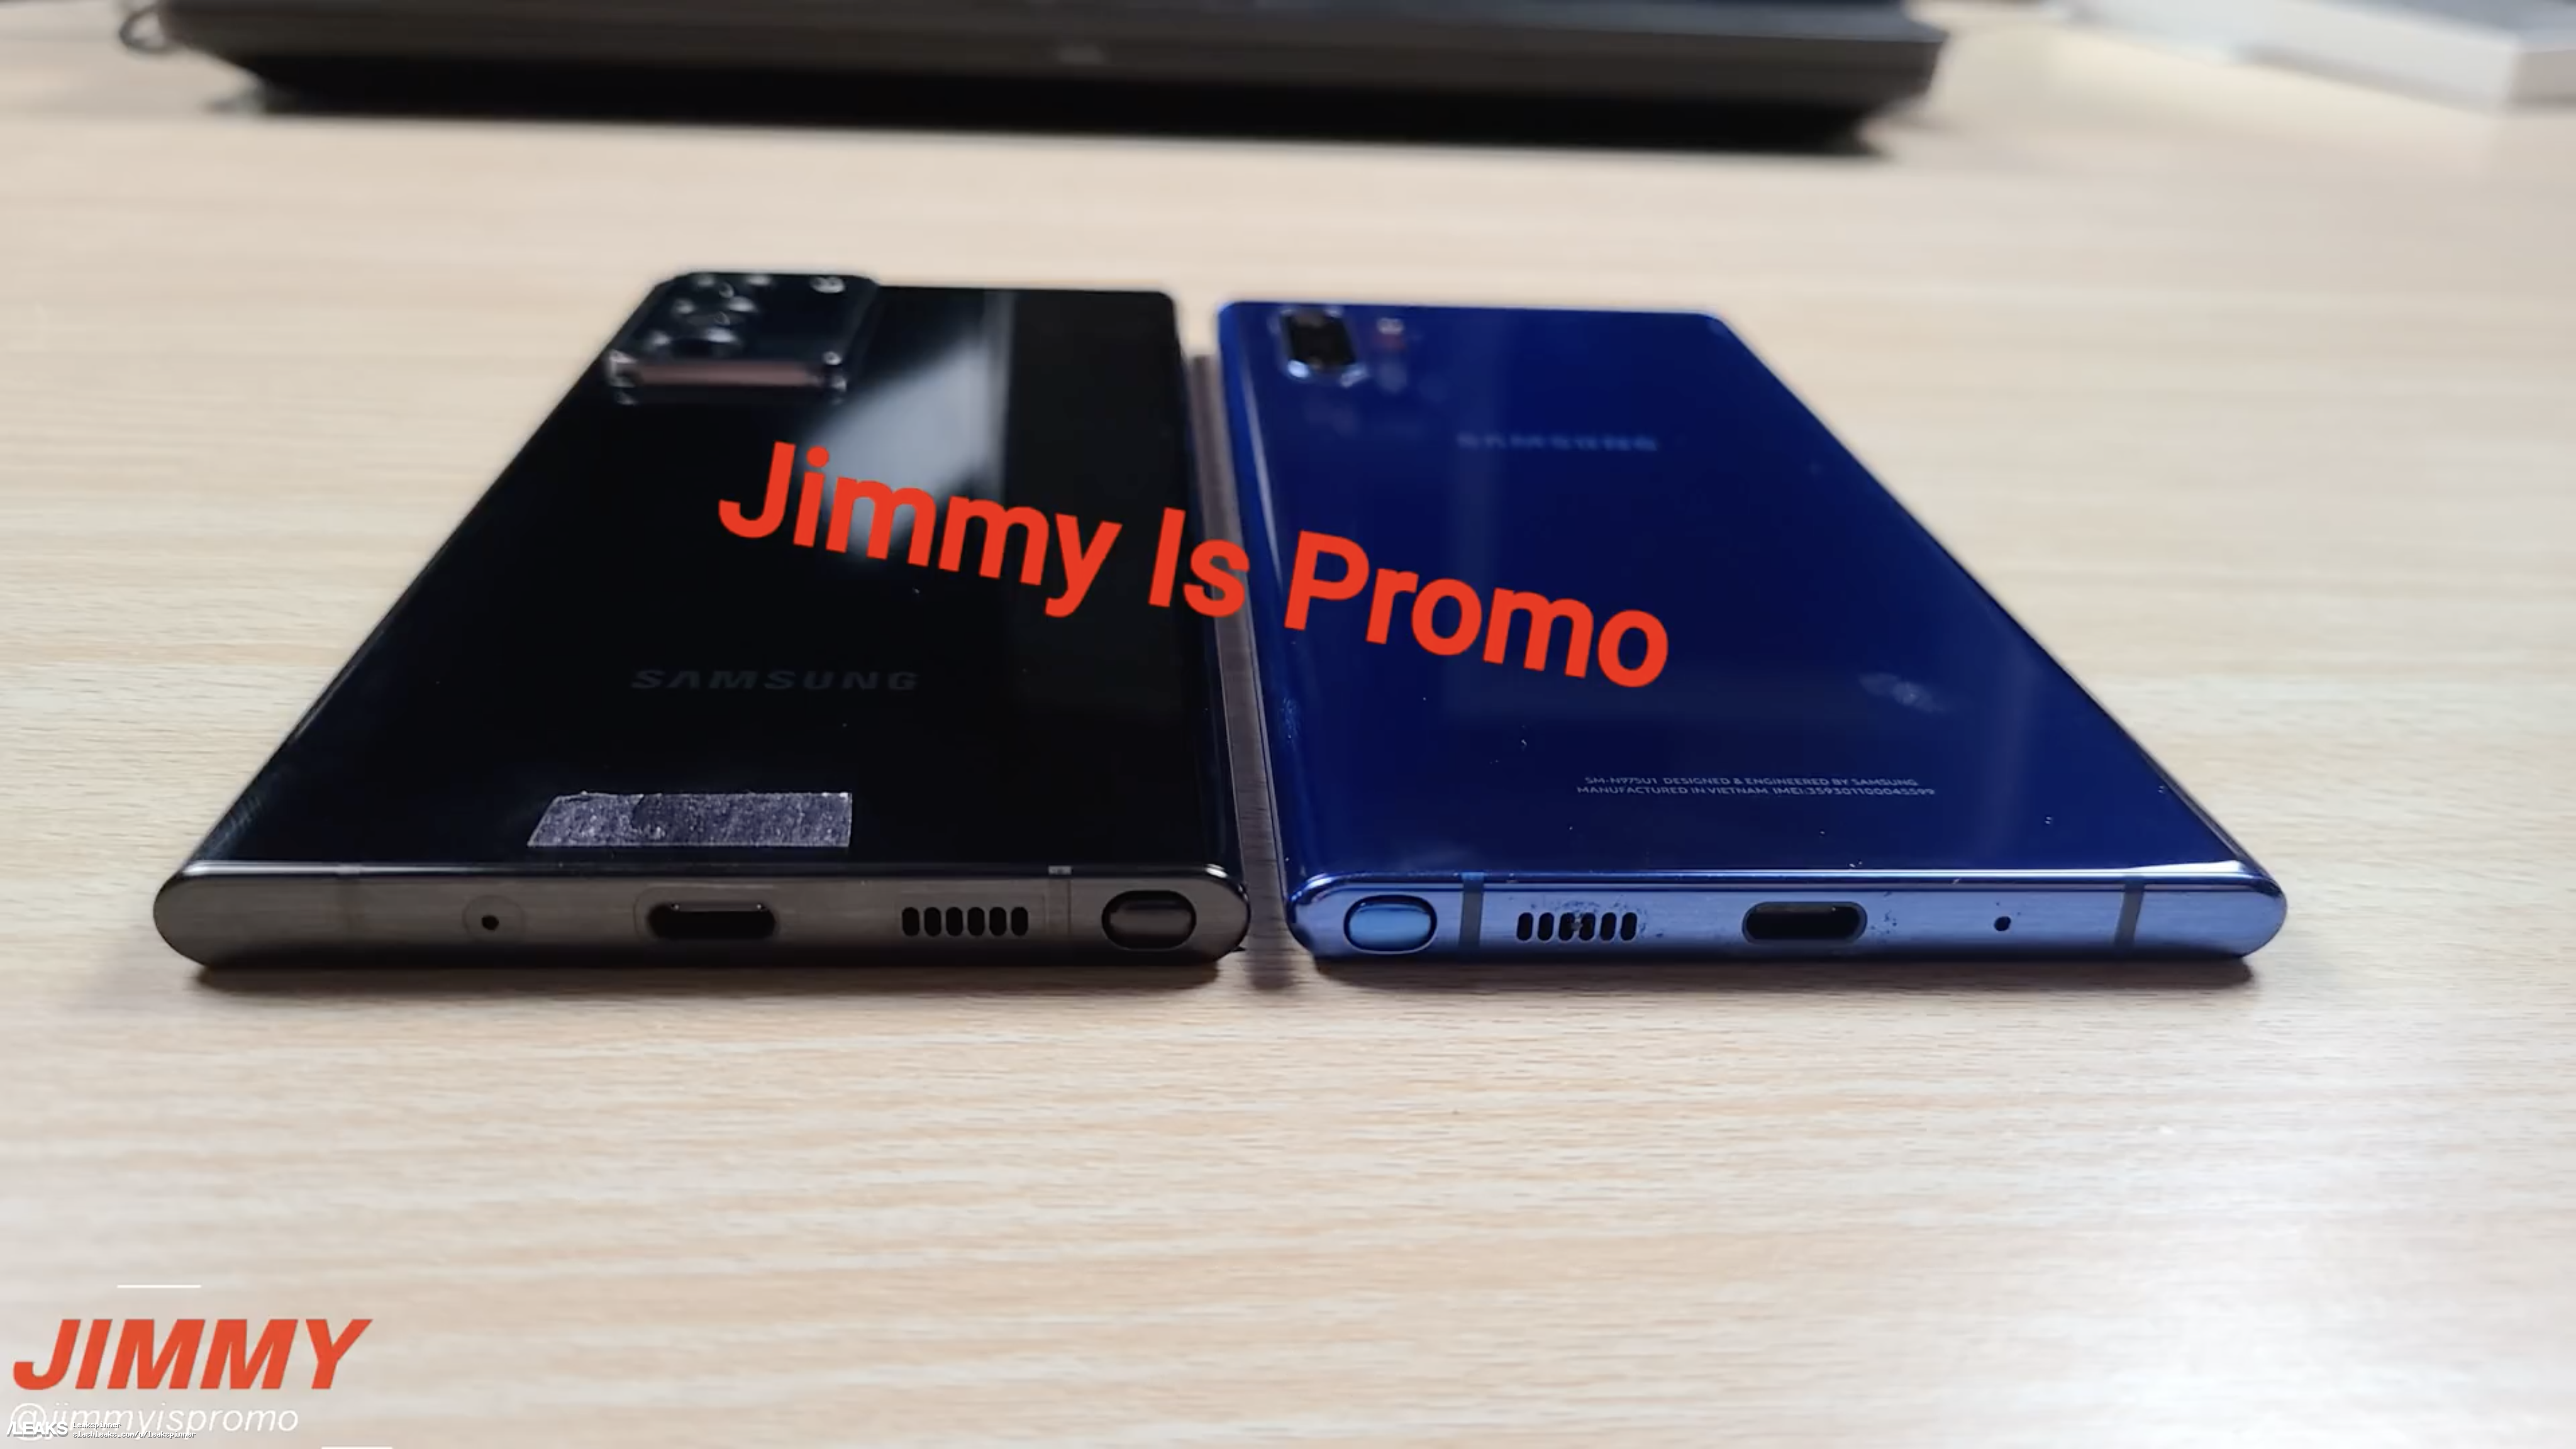 Samsung Galaxy Note 20 Ultra wideo cena S Pen plotki przecieki wycieki specyfikacja dane techniczne kiedy premiera